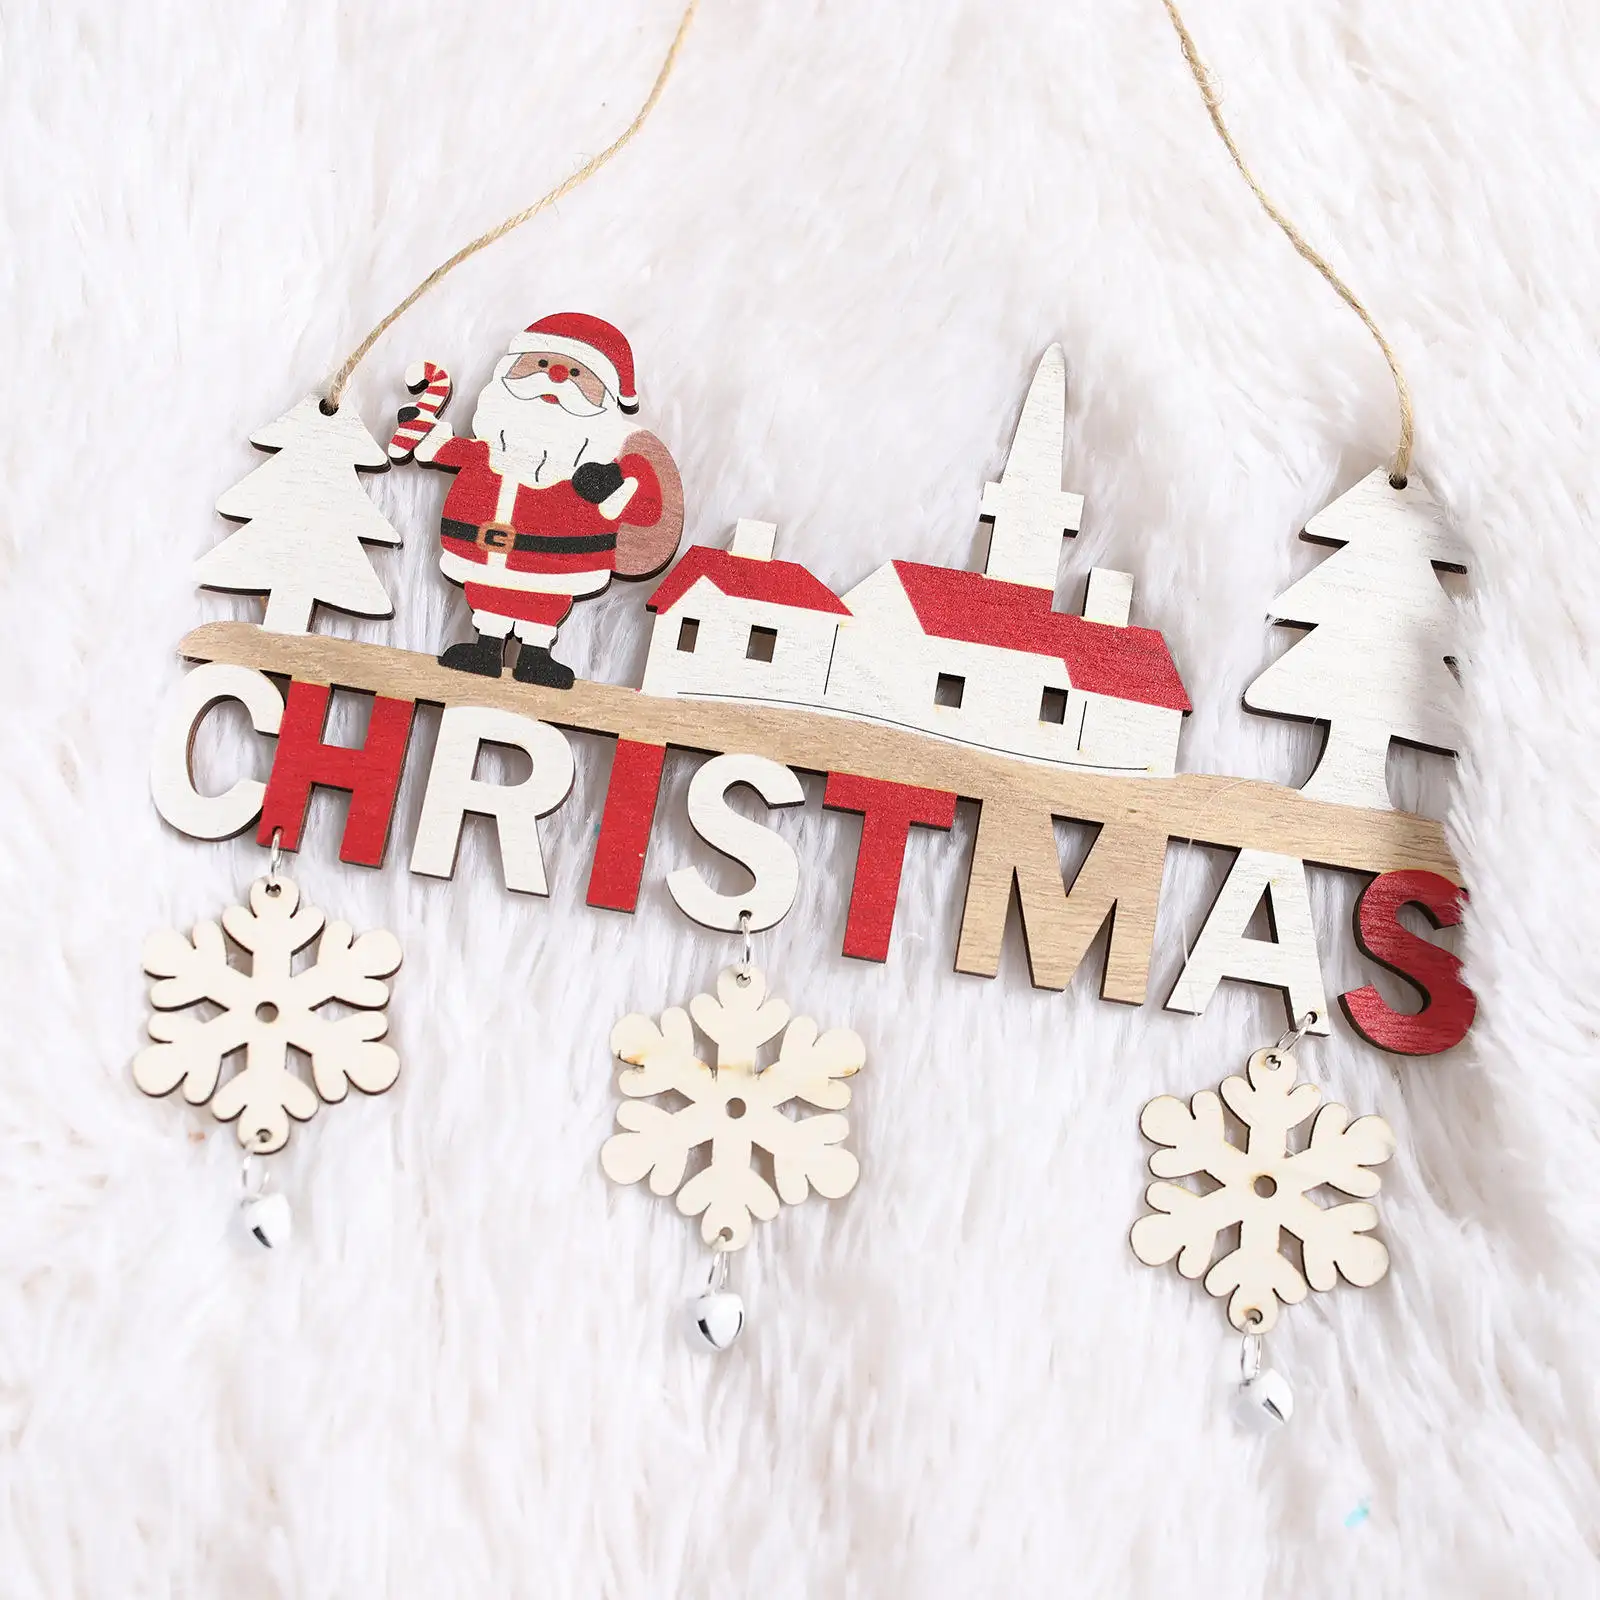 Nuevas decoraciones creativas para árboles de Navidad, decoraciones para fiestas navideñas de Año Nuevo, colgante de puerta DIY, decoración artesanal de madera de Navidad